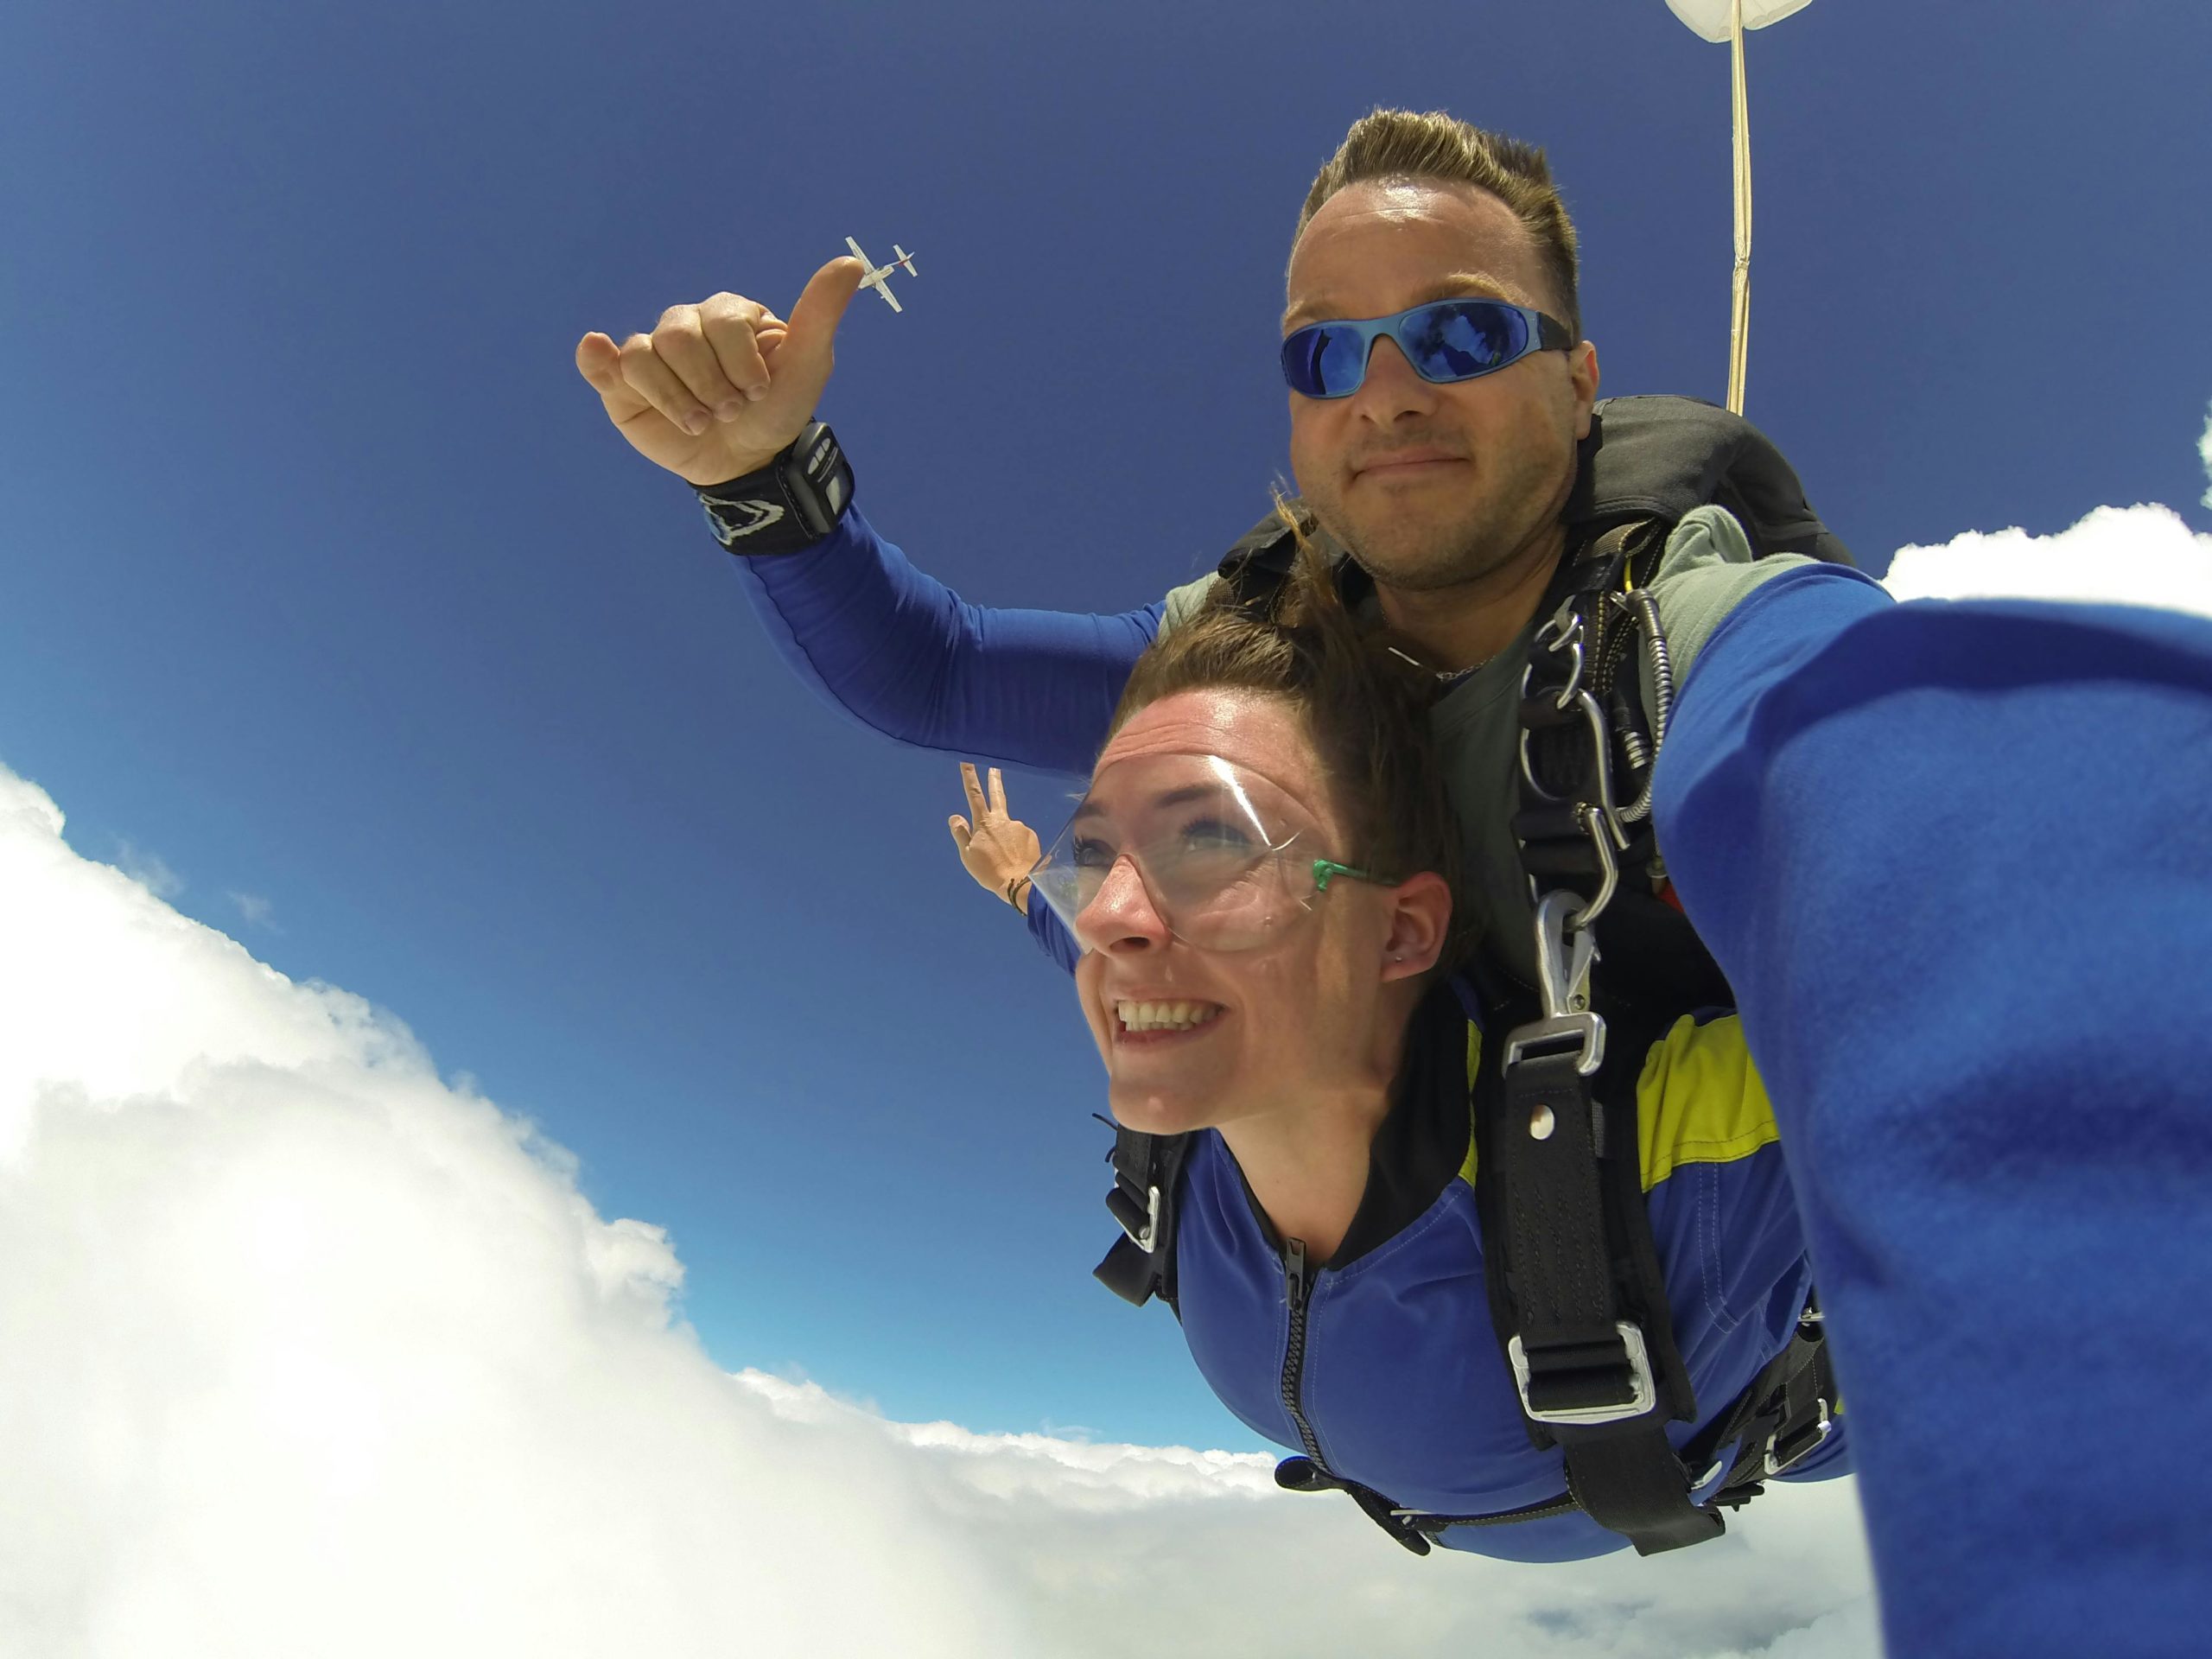 Autoportrait en chute libre de deux personnes faisant un saut en tandem en parachute, avec un instructeur derrière et un passager devant faisant le signe de la victoire, au-dessus des nuages avec un ciel bleu en arrière-plan.